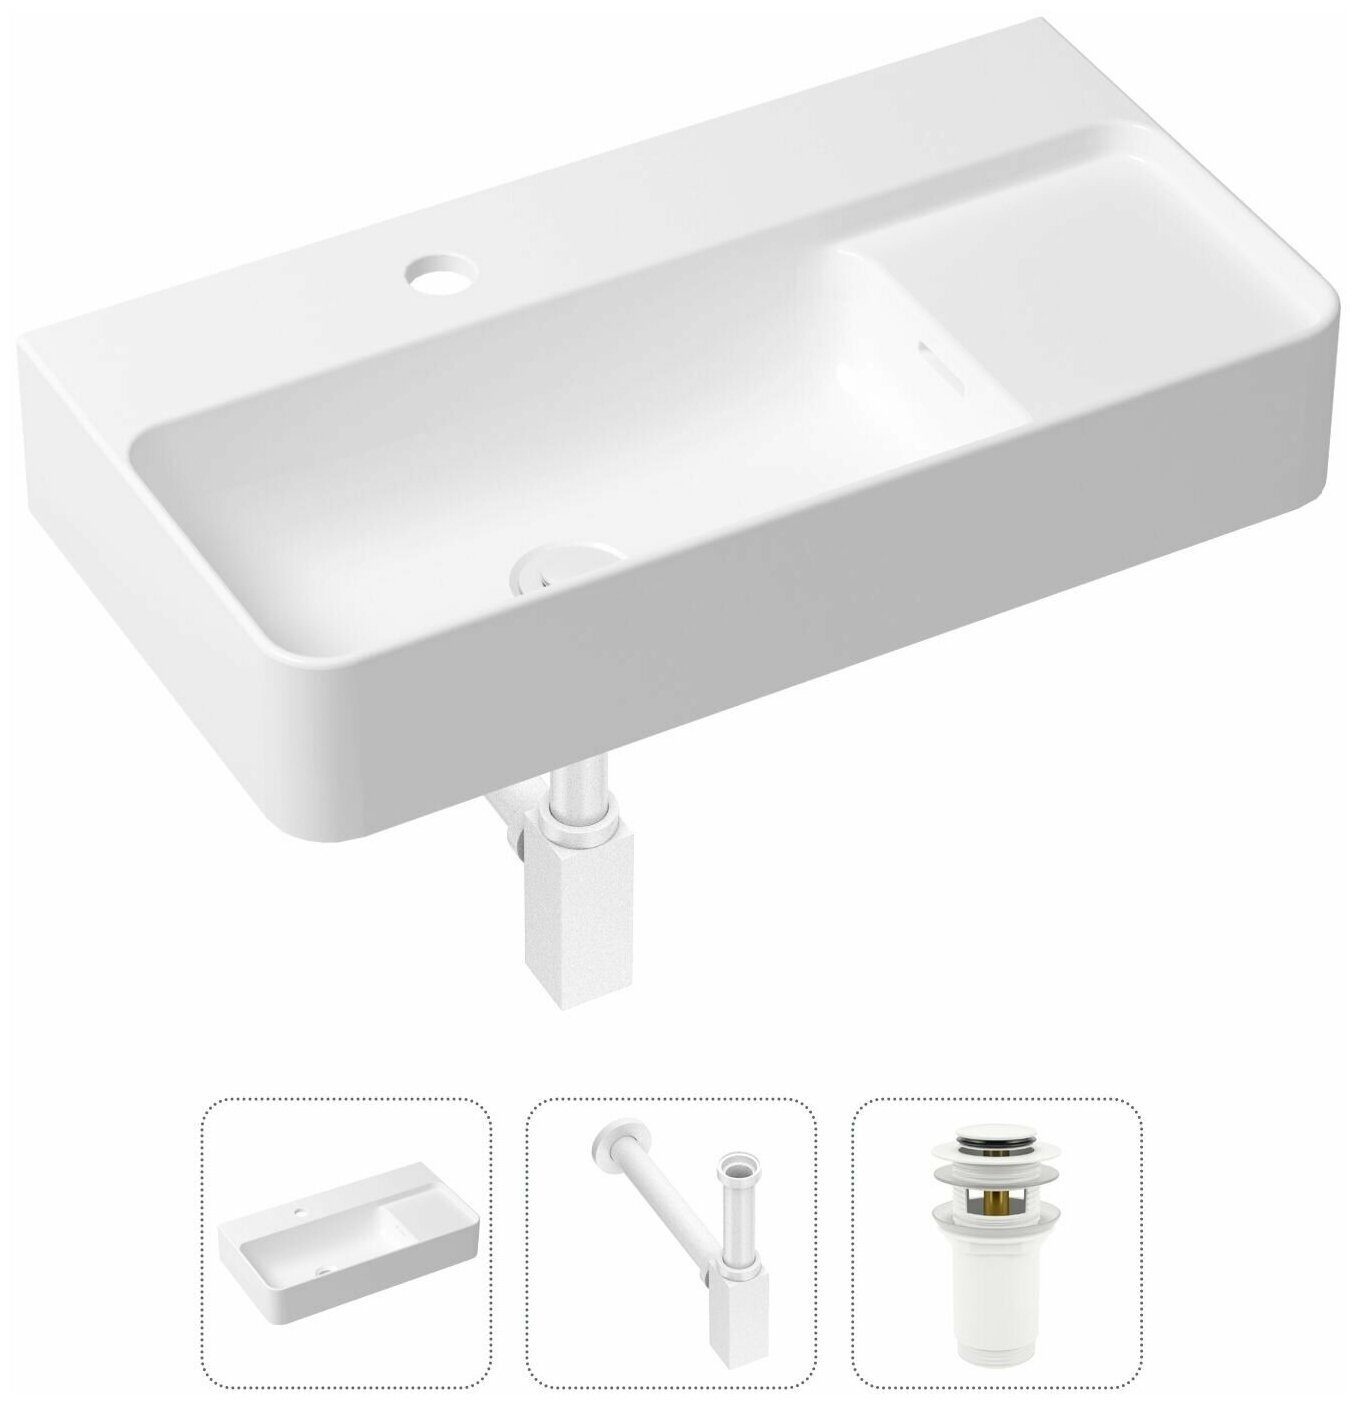 Комплект 3 в 1 Lavinia Boho Bathroom Sink 21520510: накладная фарфоровая раковина 60 см, металлический сифон, донный клапан